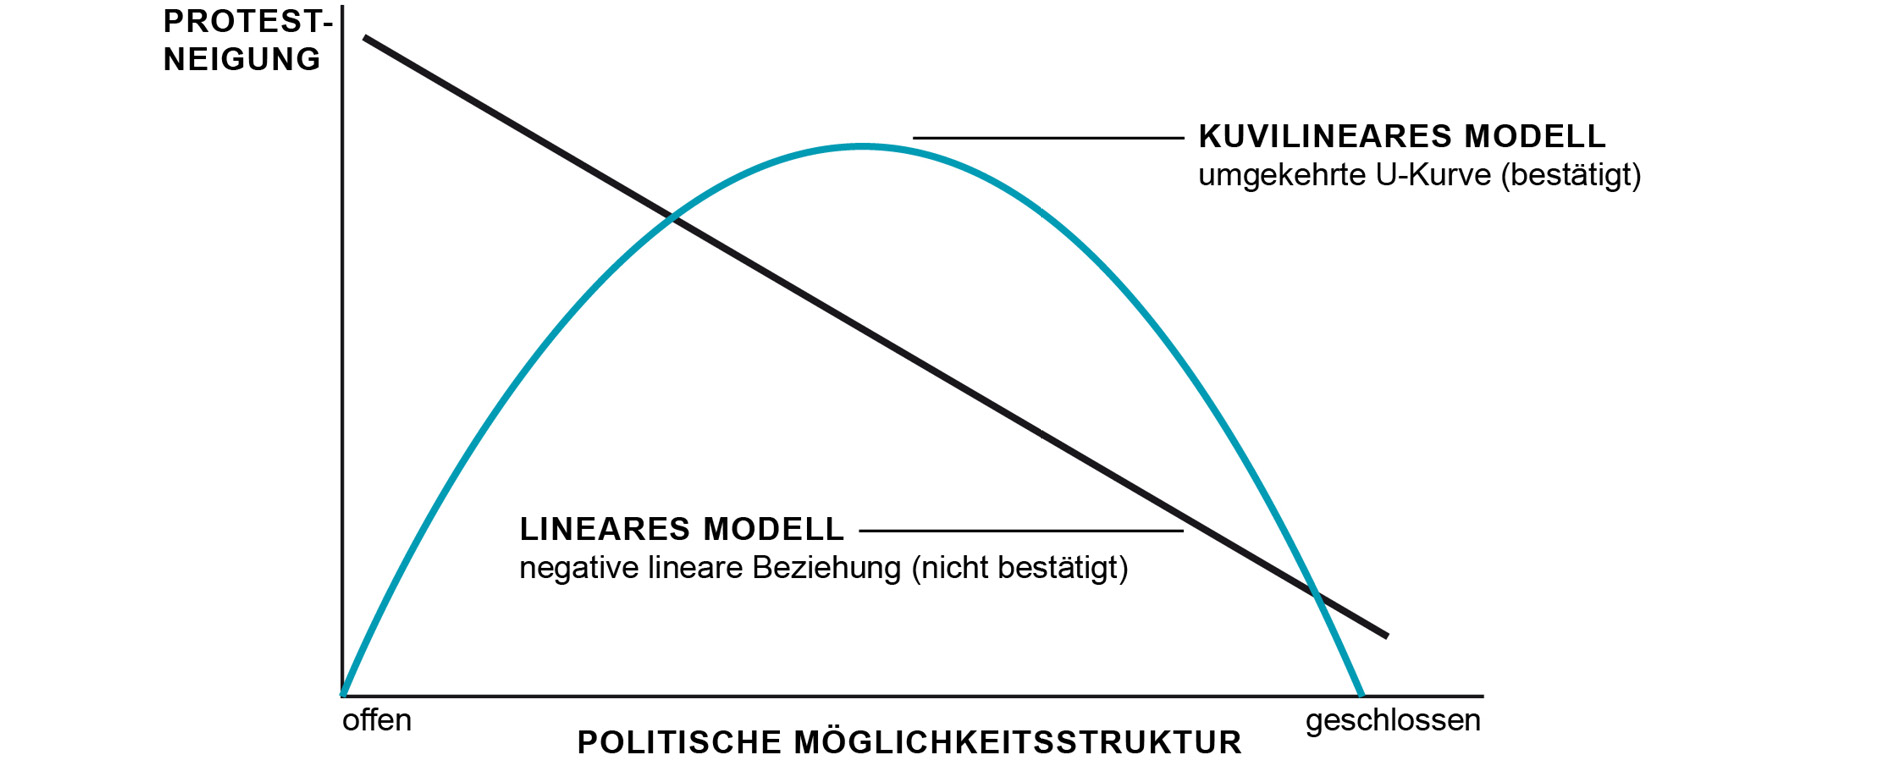 Die Abbildung zeigt ein Diagramm, auf dessen x-Achse die politische Möglichkeitsstruktur und auf der y-Achse die Protest Neigung dargestellt sind. Darin zeigt sich das kuvilineare Modell als umgekehrte U-Kurve und das lineare Modell als grade Achse von einer hohen Protest Neigung zu einer geschlossenen politischen Möglichkeitsstruktur.